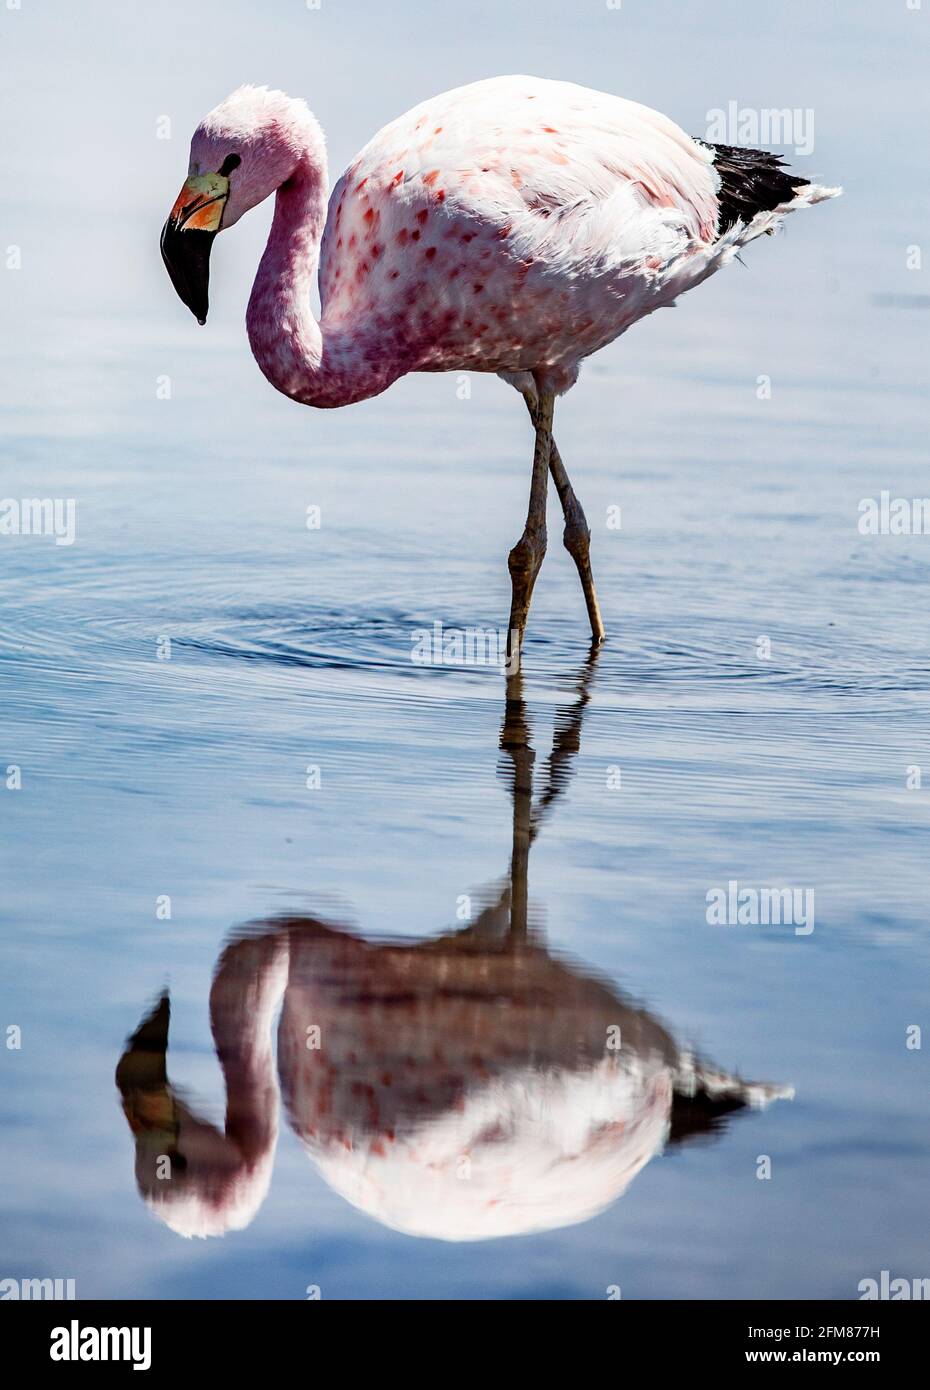 Der Lebensraum der Flamingos ist durch den Lithiumabbau der Firma M² austère eingeschränkt Taort Erde Lithium Felder in Banque D'Images